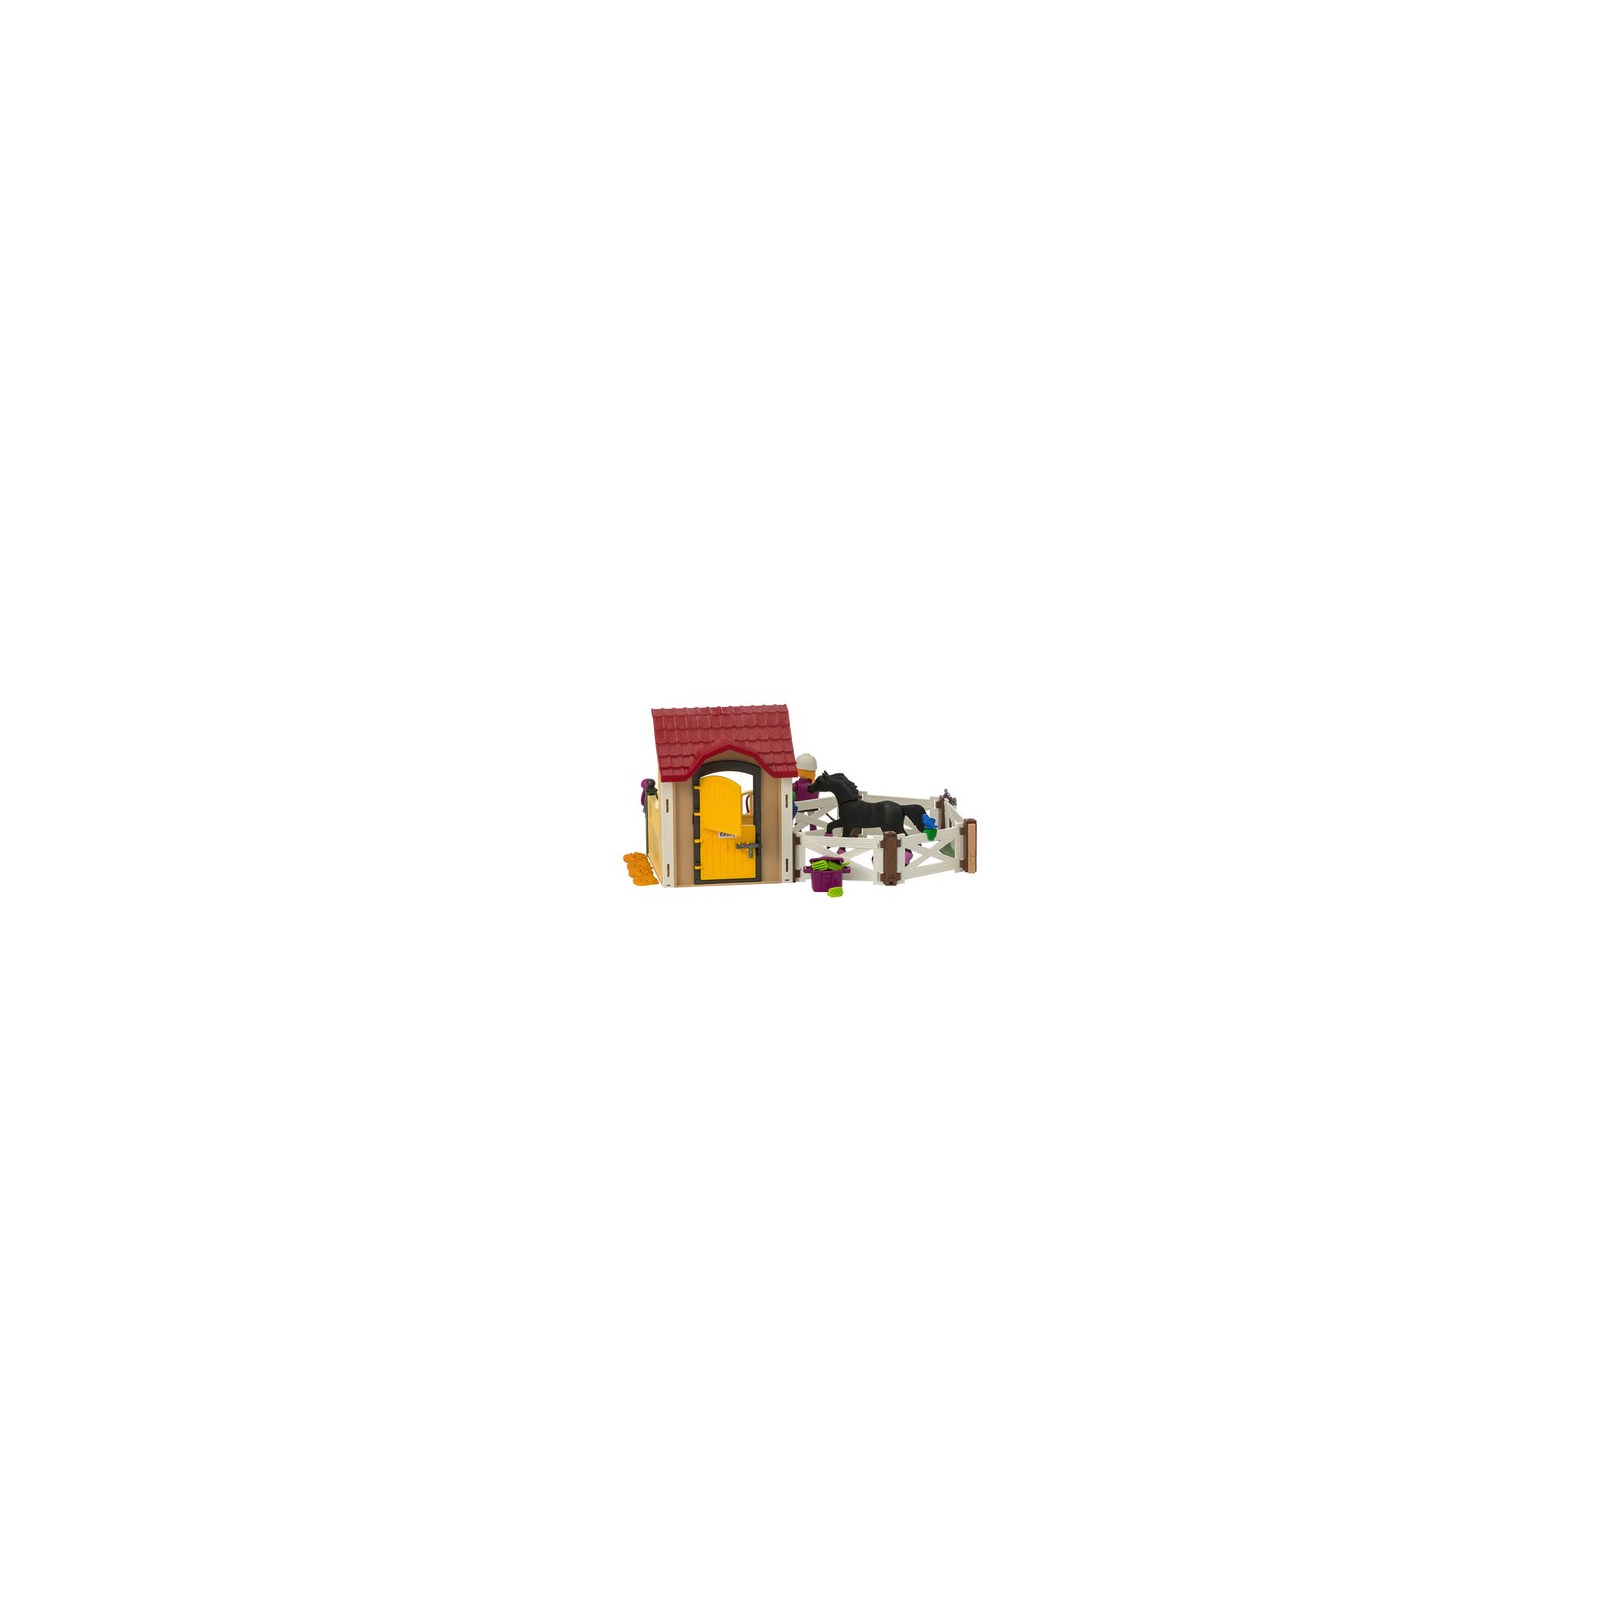 Конструктор Playmobil Country Конюшня с арабскими скакунами (6934) изображение 3